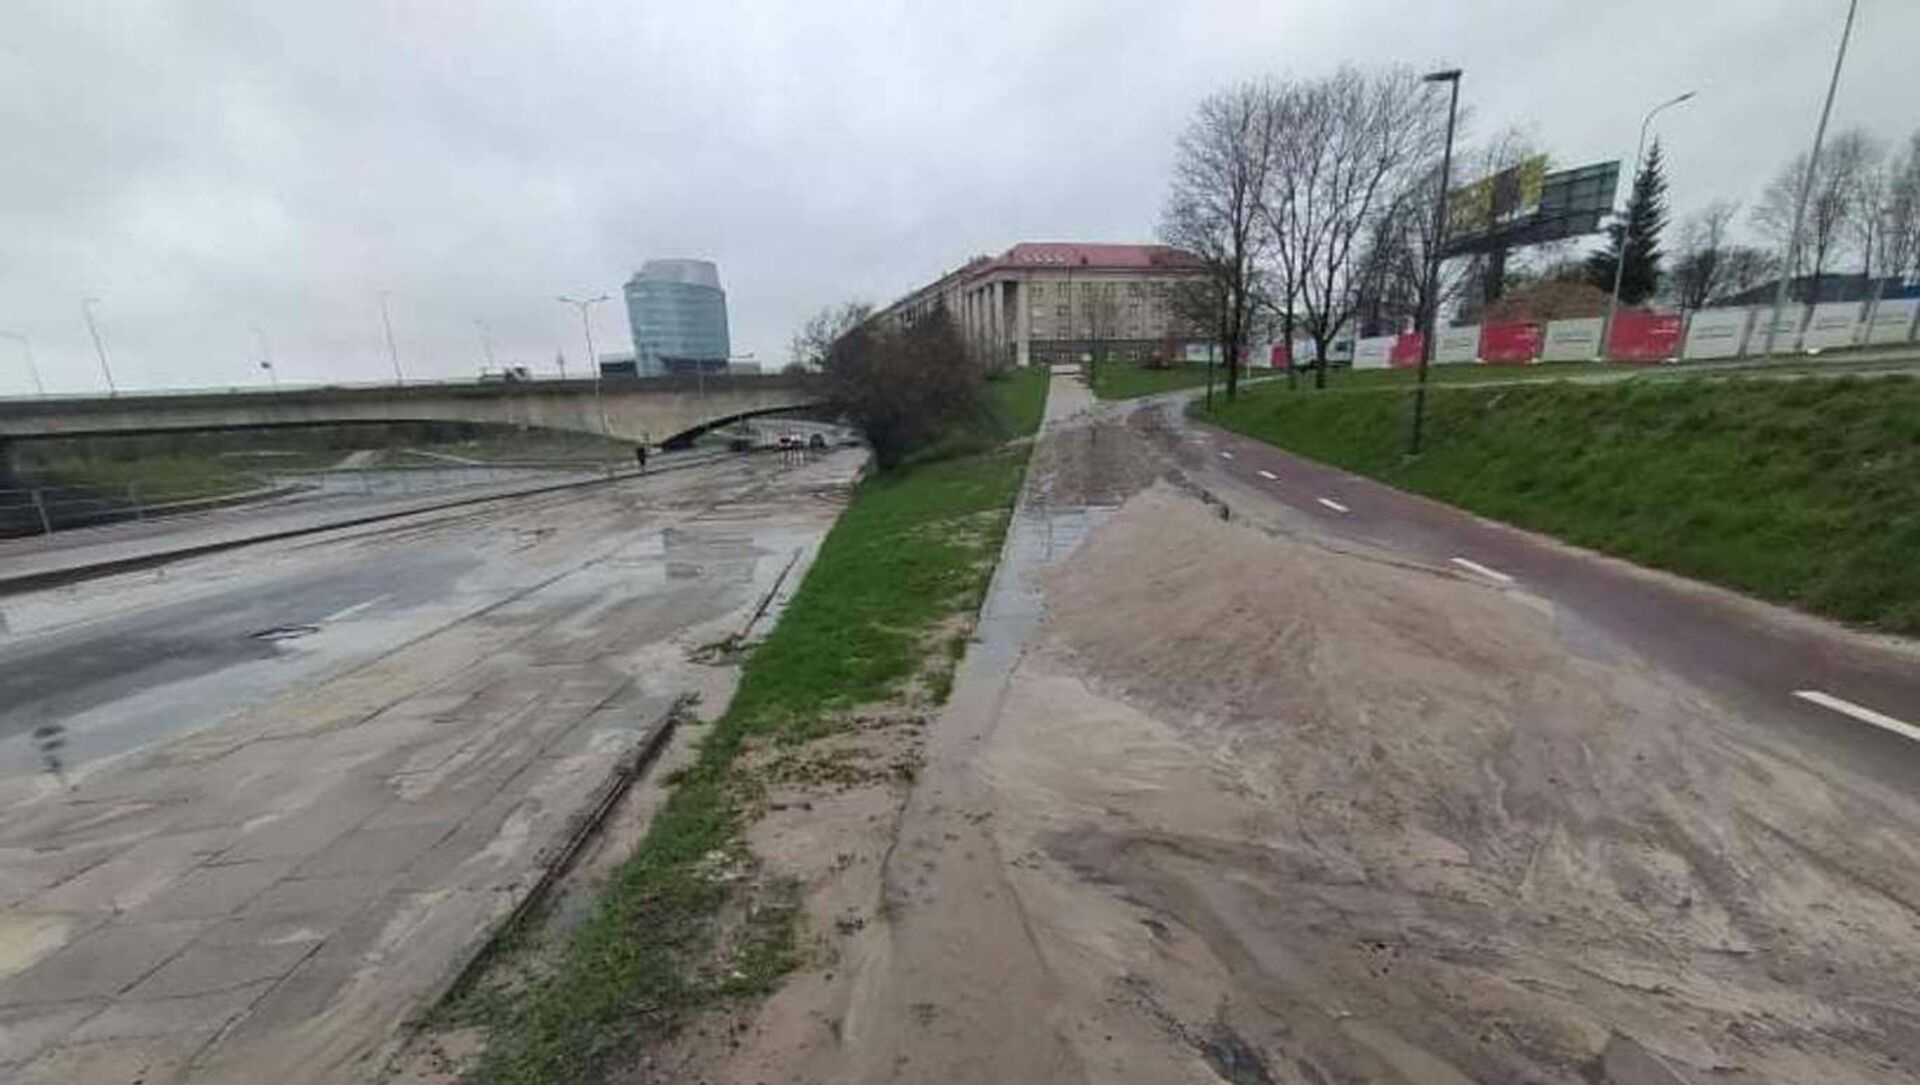 Улицу Упес в Вильнюсе залило водой из-за аварии с водопроводом, 23 апреля 2021 года - Sputnik Литва, 1920, 23.04.2021